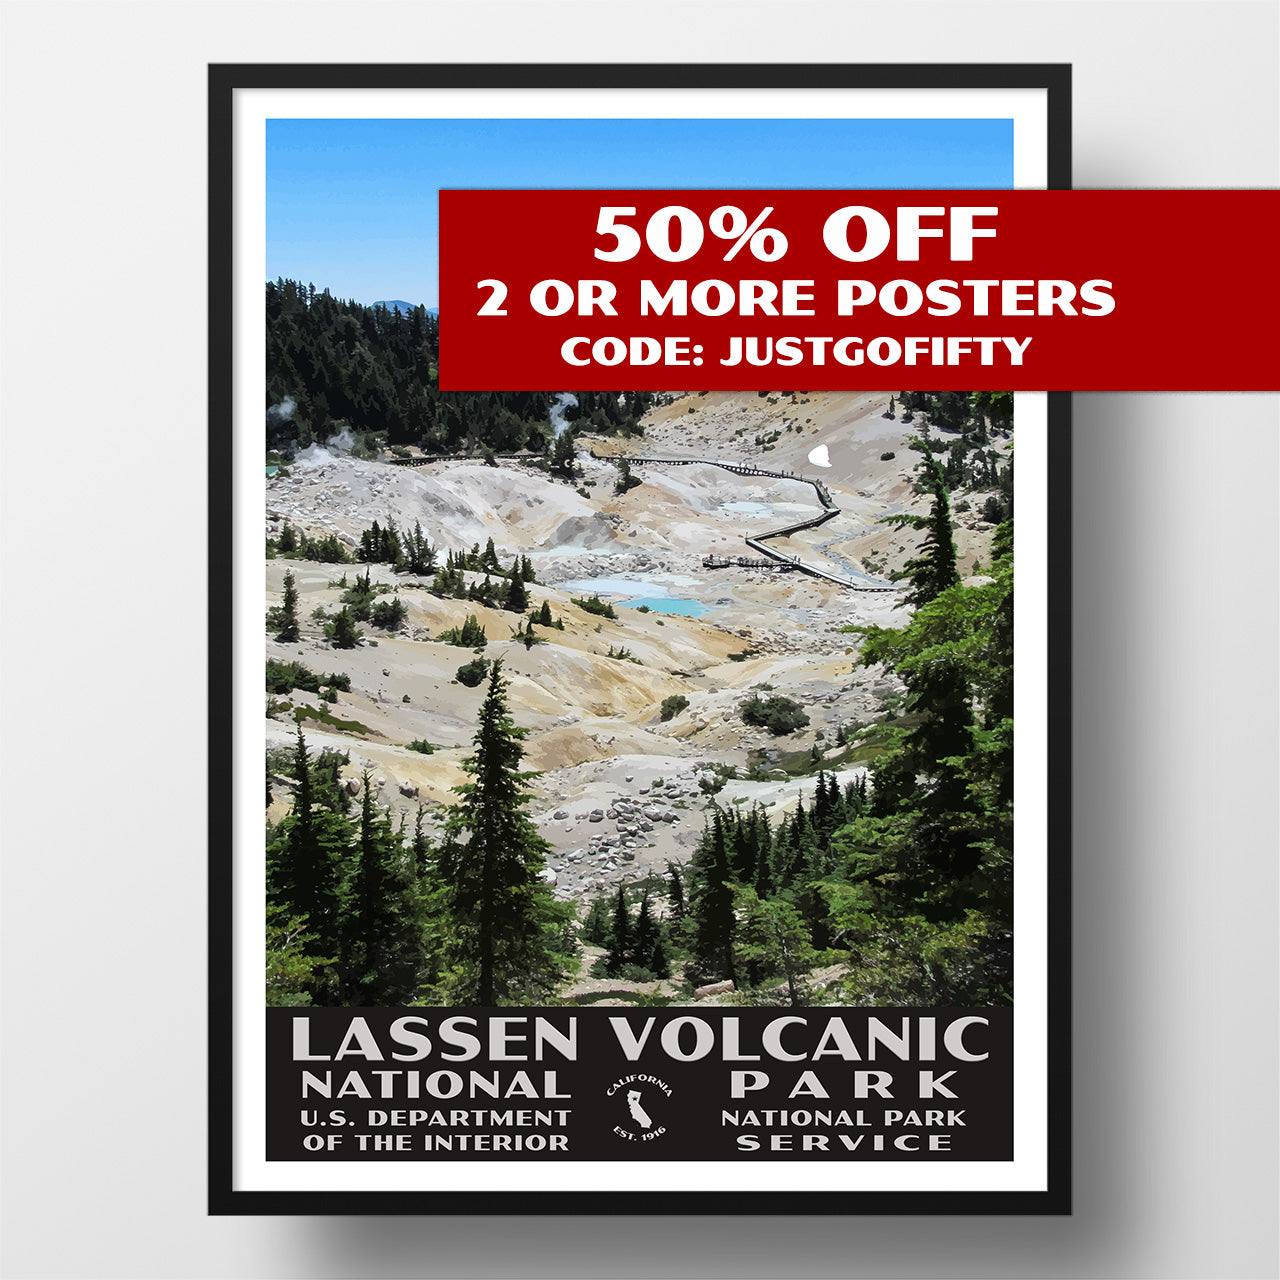 Lassen Volcanic National Park poster